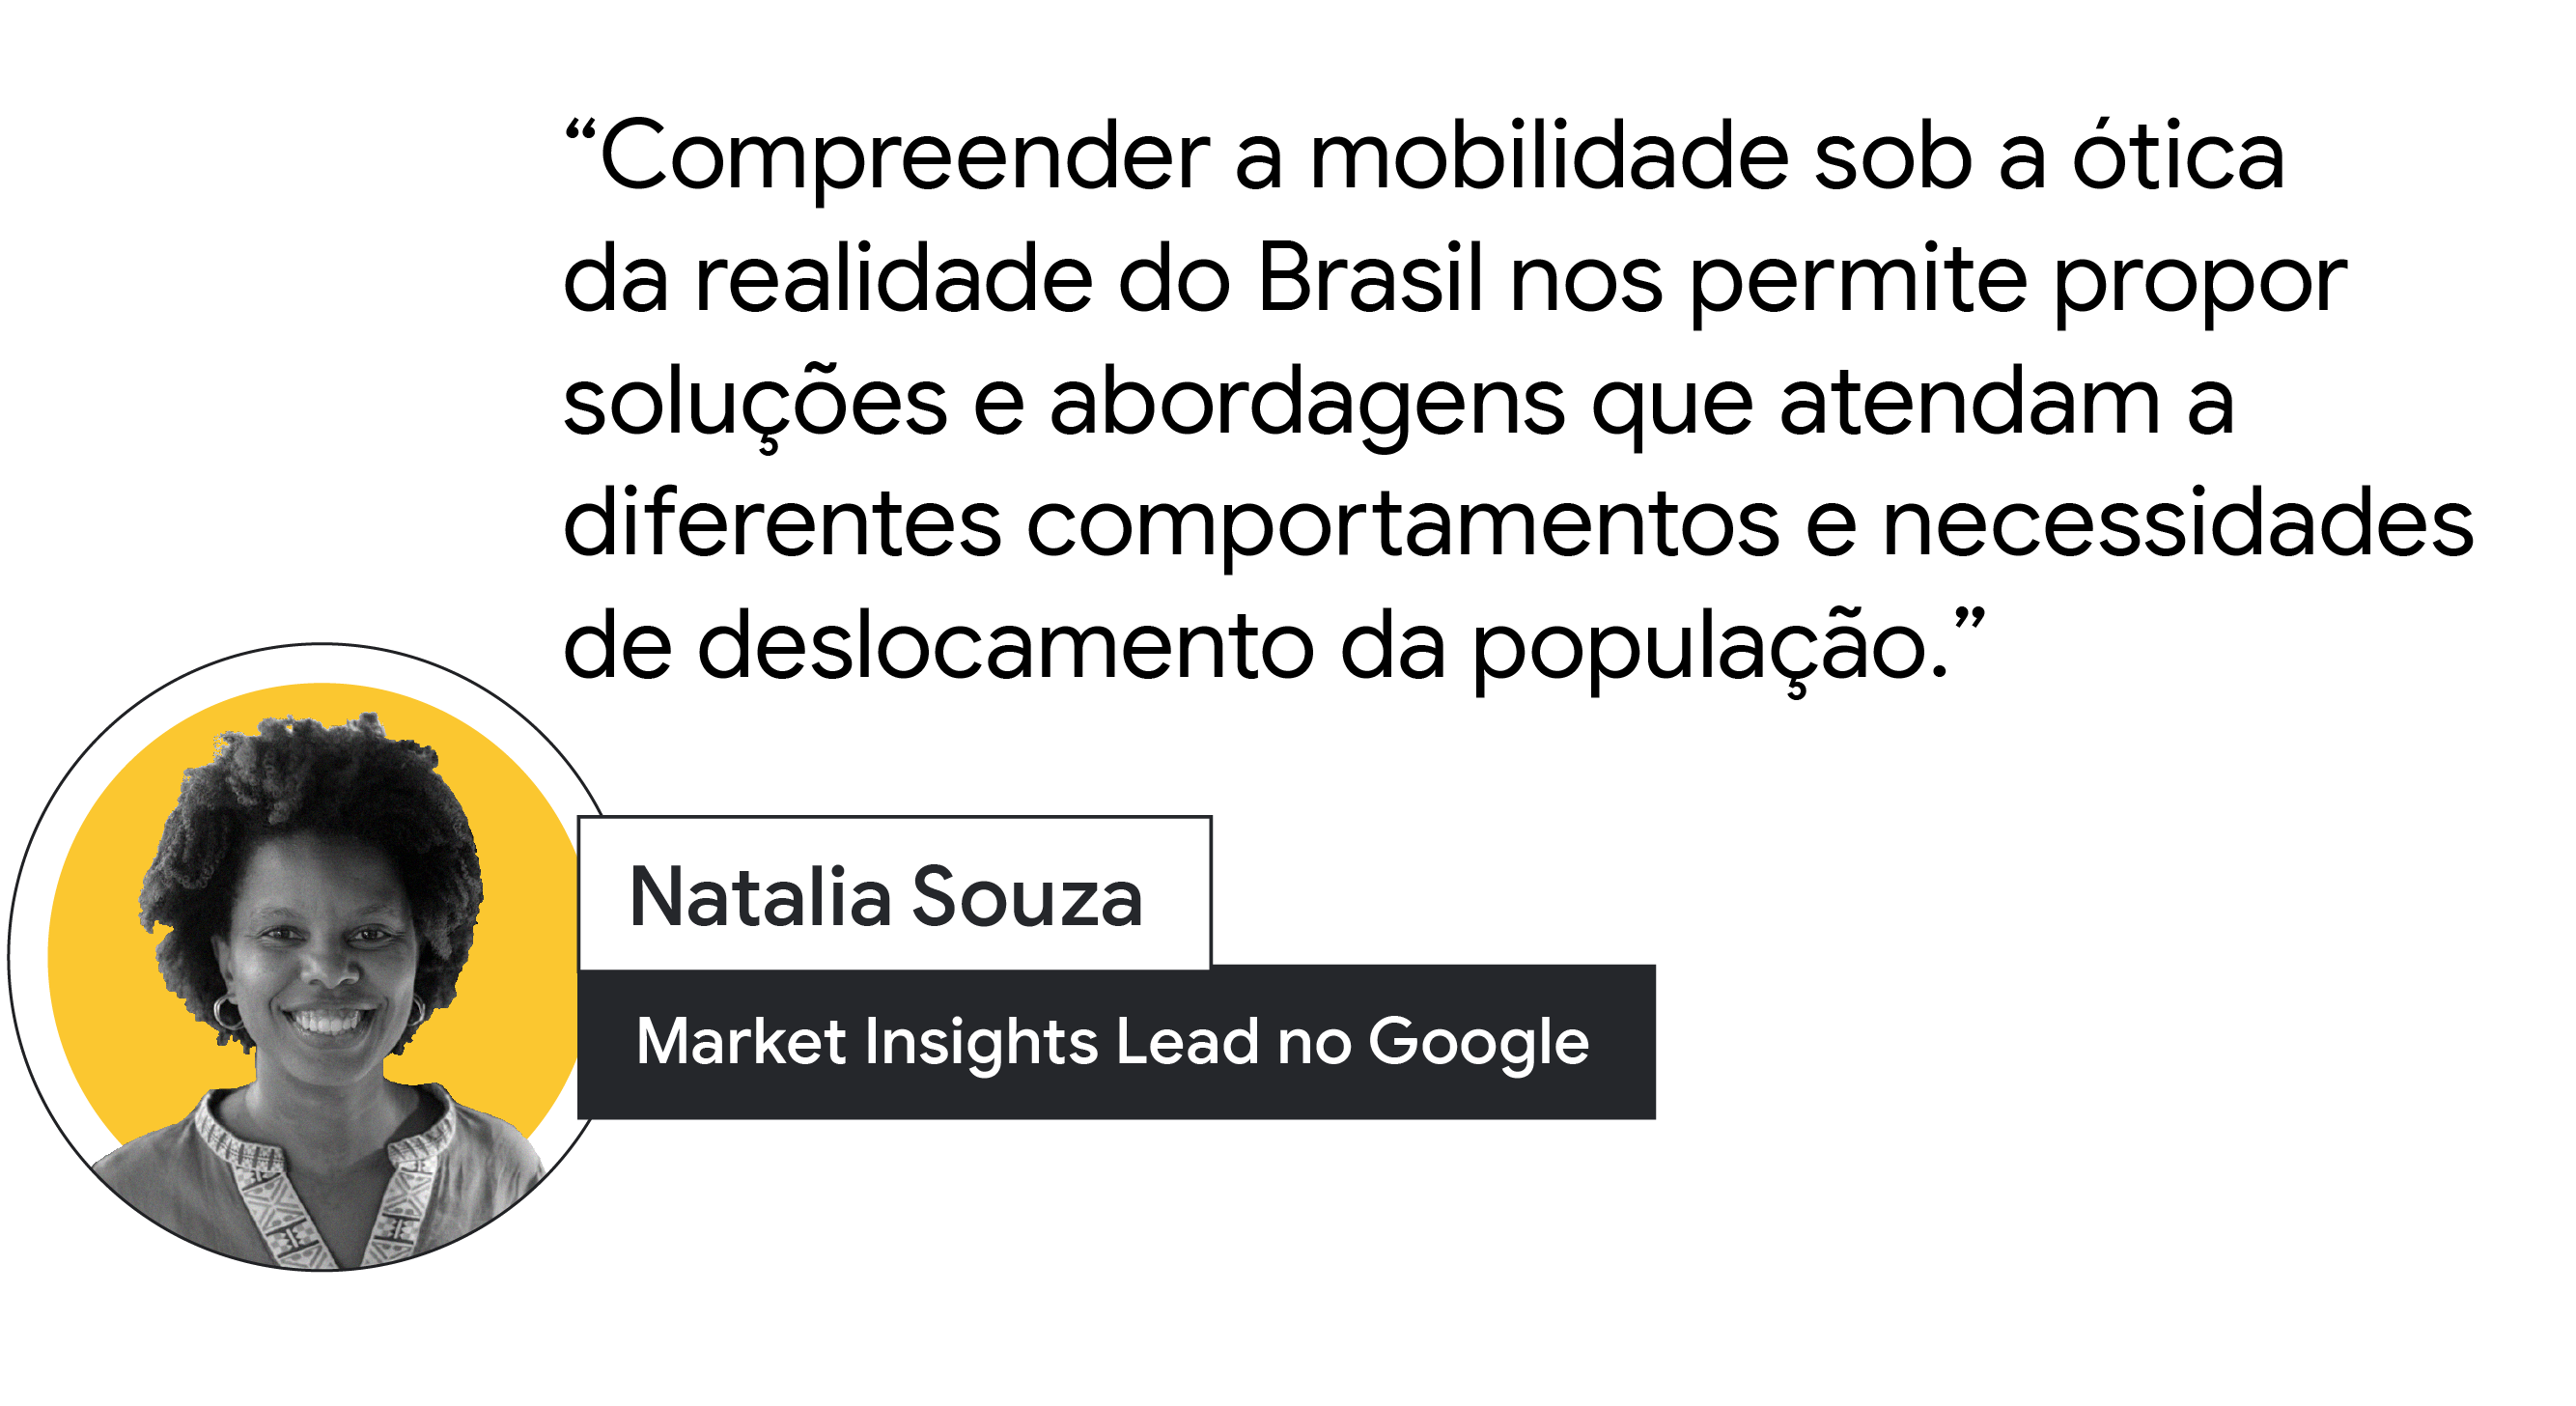 “Compreender a mobilidade sob a ótica da realidade do Brasil nos permite propor soluções e abordagens que atendam a diferentes comportamentos e necessidades de deslocamento da população”, fala de Natalia Souza, Market Insights Lead no Google.